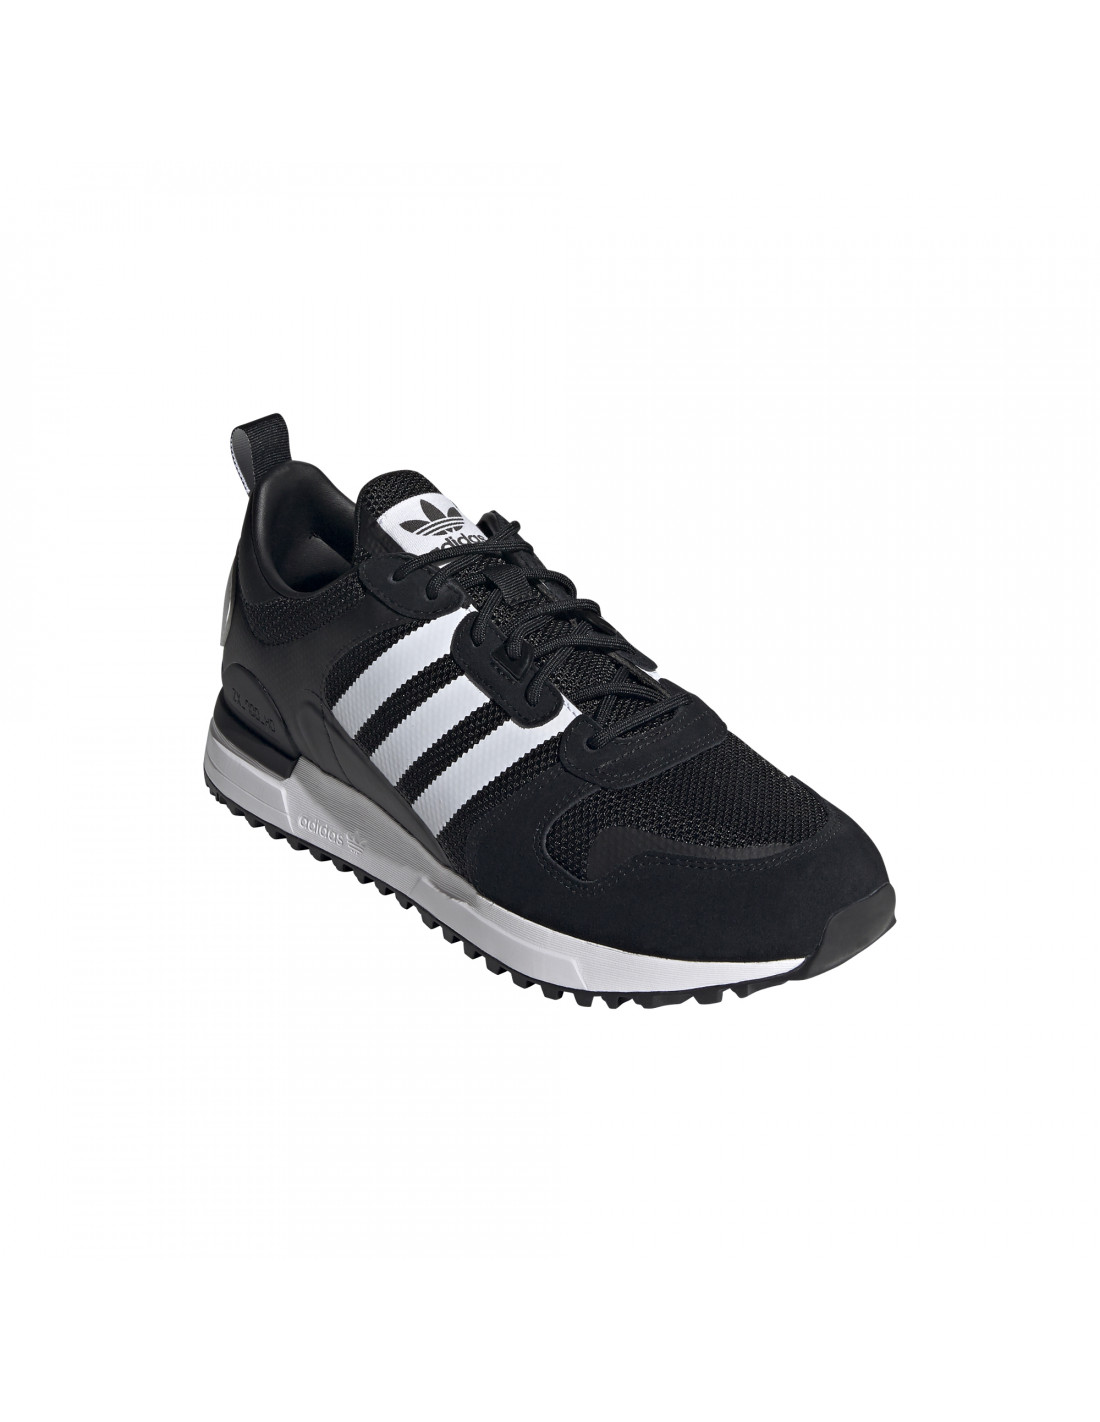 Zapatillas adidas Originals ZX HD Color Negro Tallas calzado adidas 40 2/3